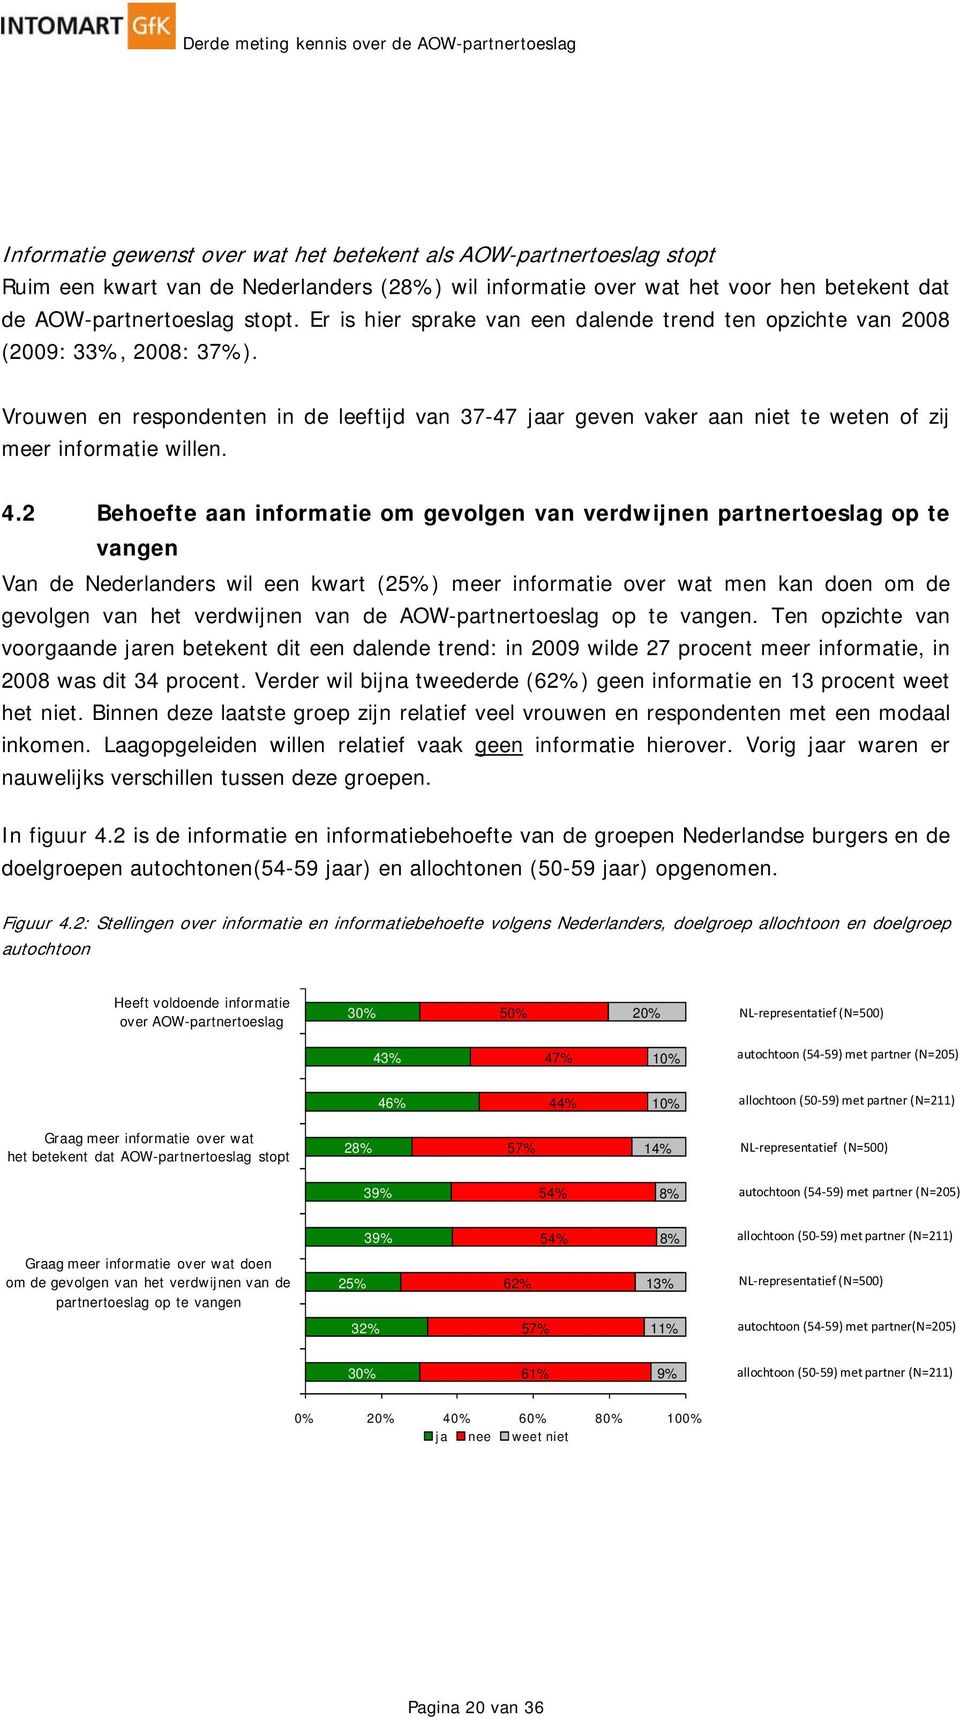 4.2 Behoefte aan informatie om gevolgen van verdwijnen partnertoeslag op te vangen Van de Nederlanders wil een kwart (25%) meer informatie over wat men kan doen om de gevolgen van het verdwijnen van